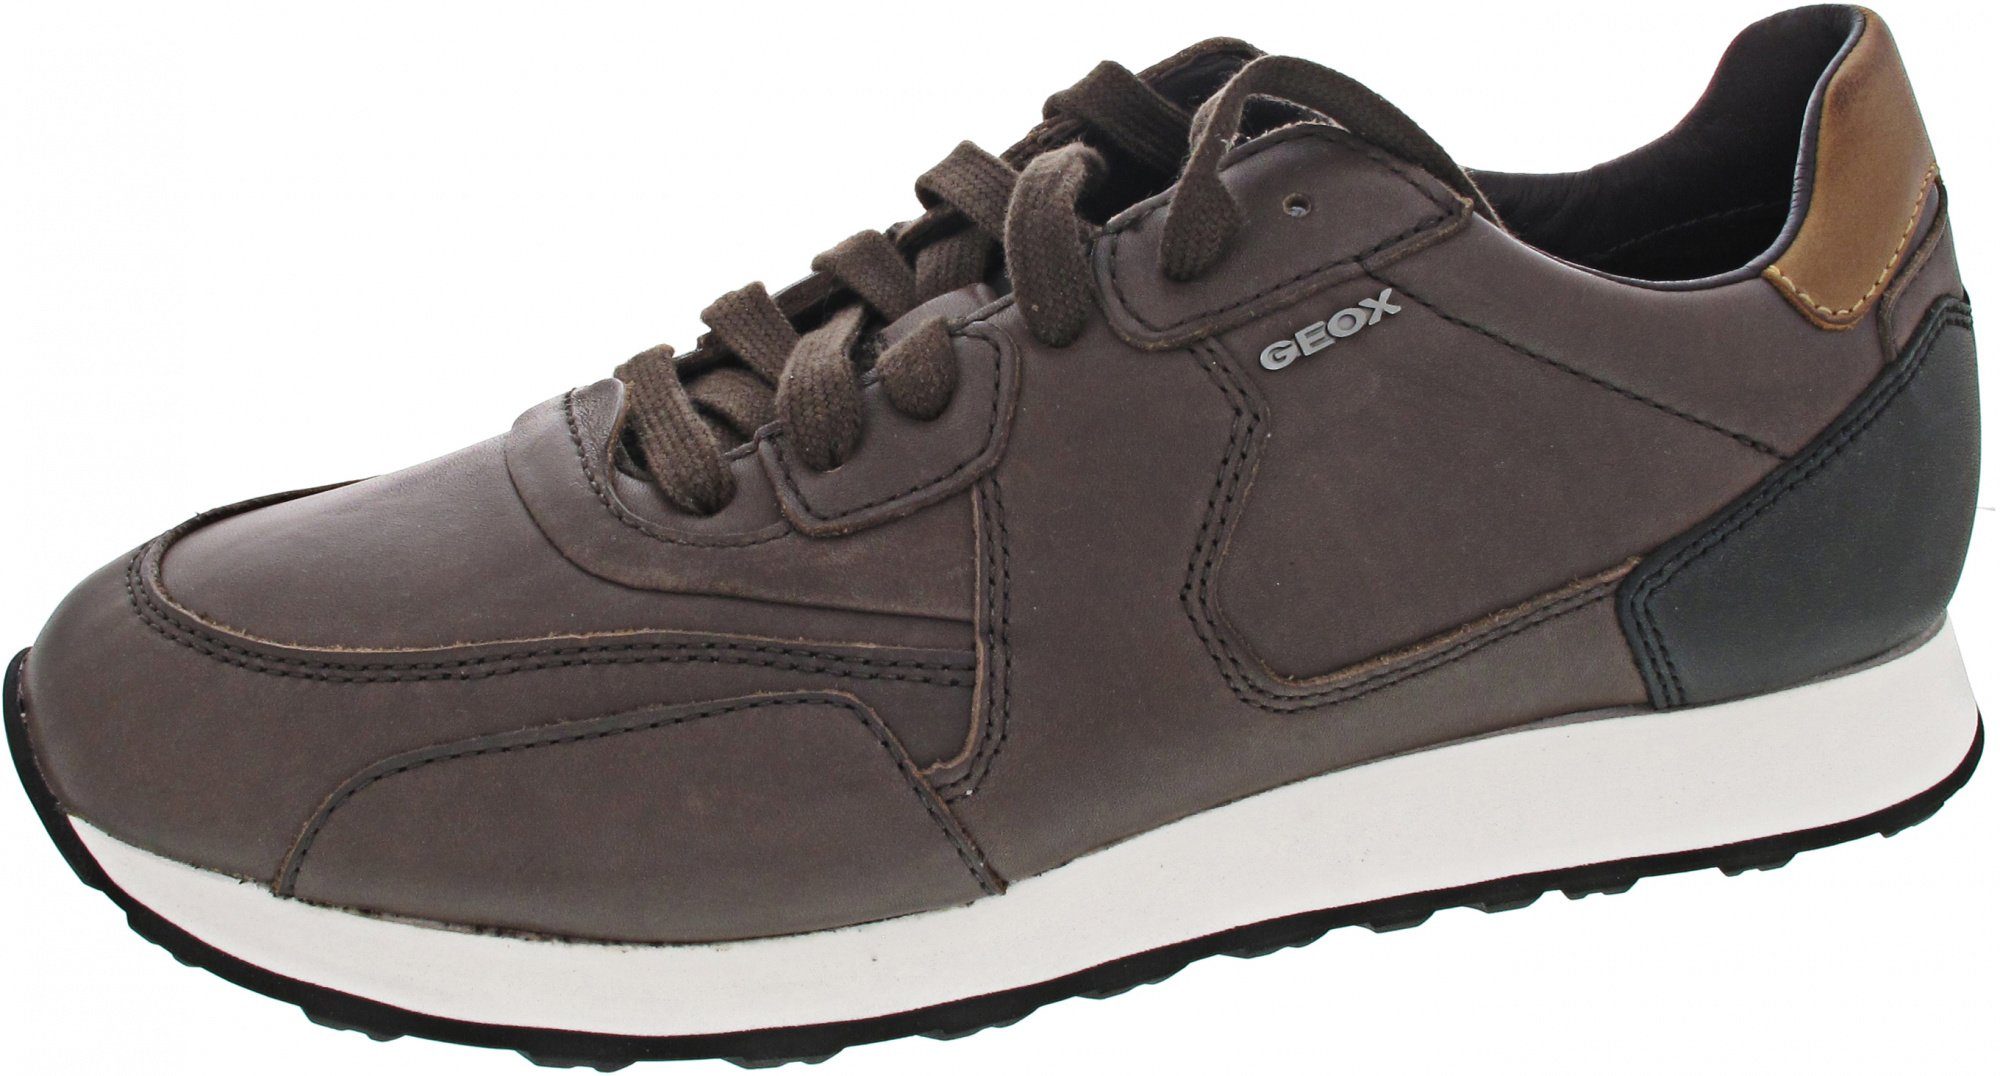 Geox »Vincit« Sneaker Wechselfußbett, braun online kaufen | OTTO